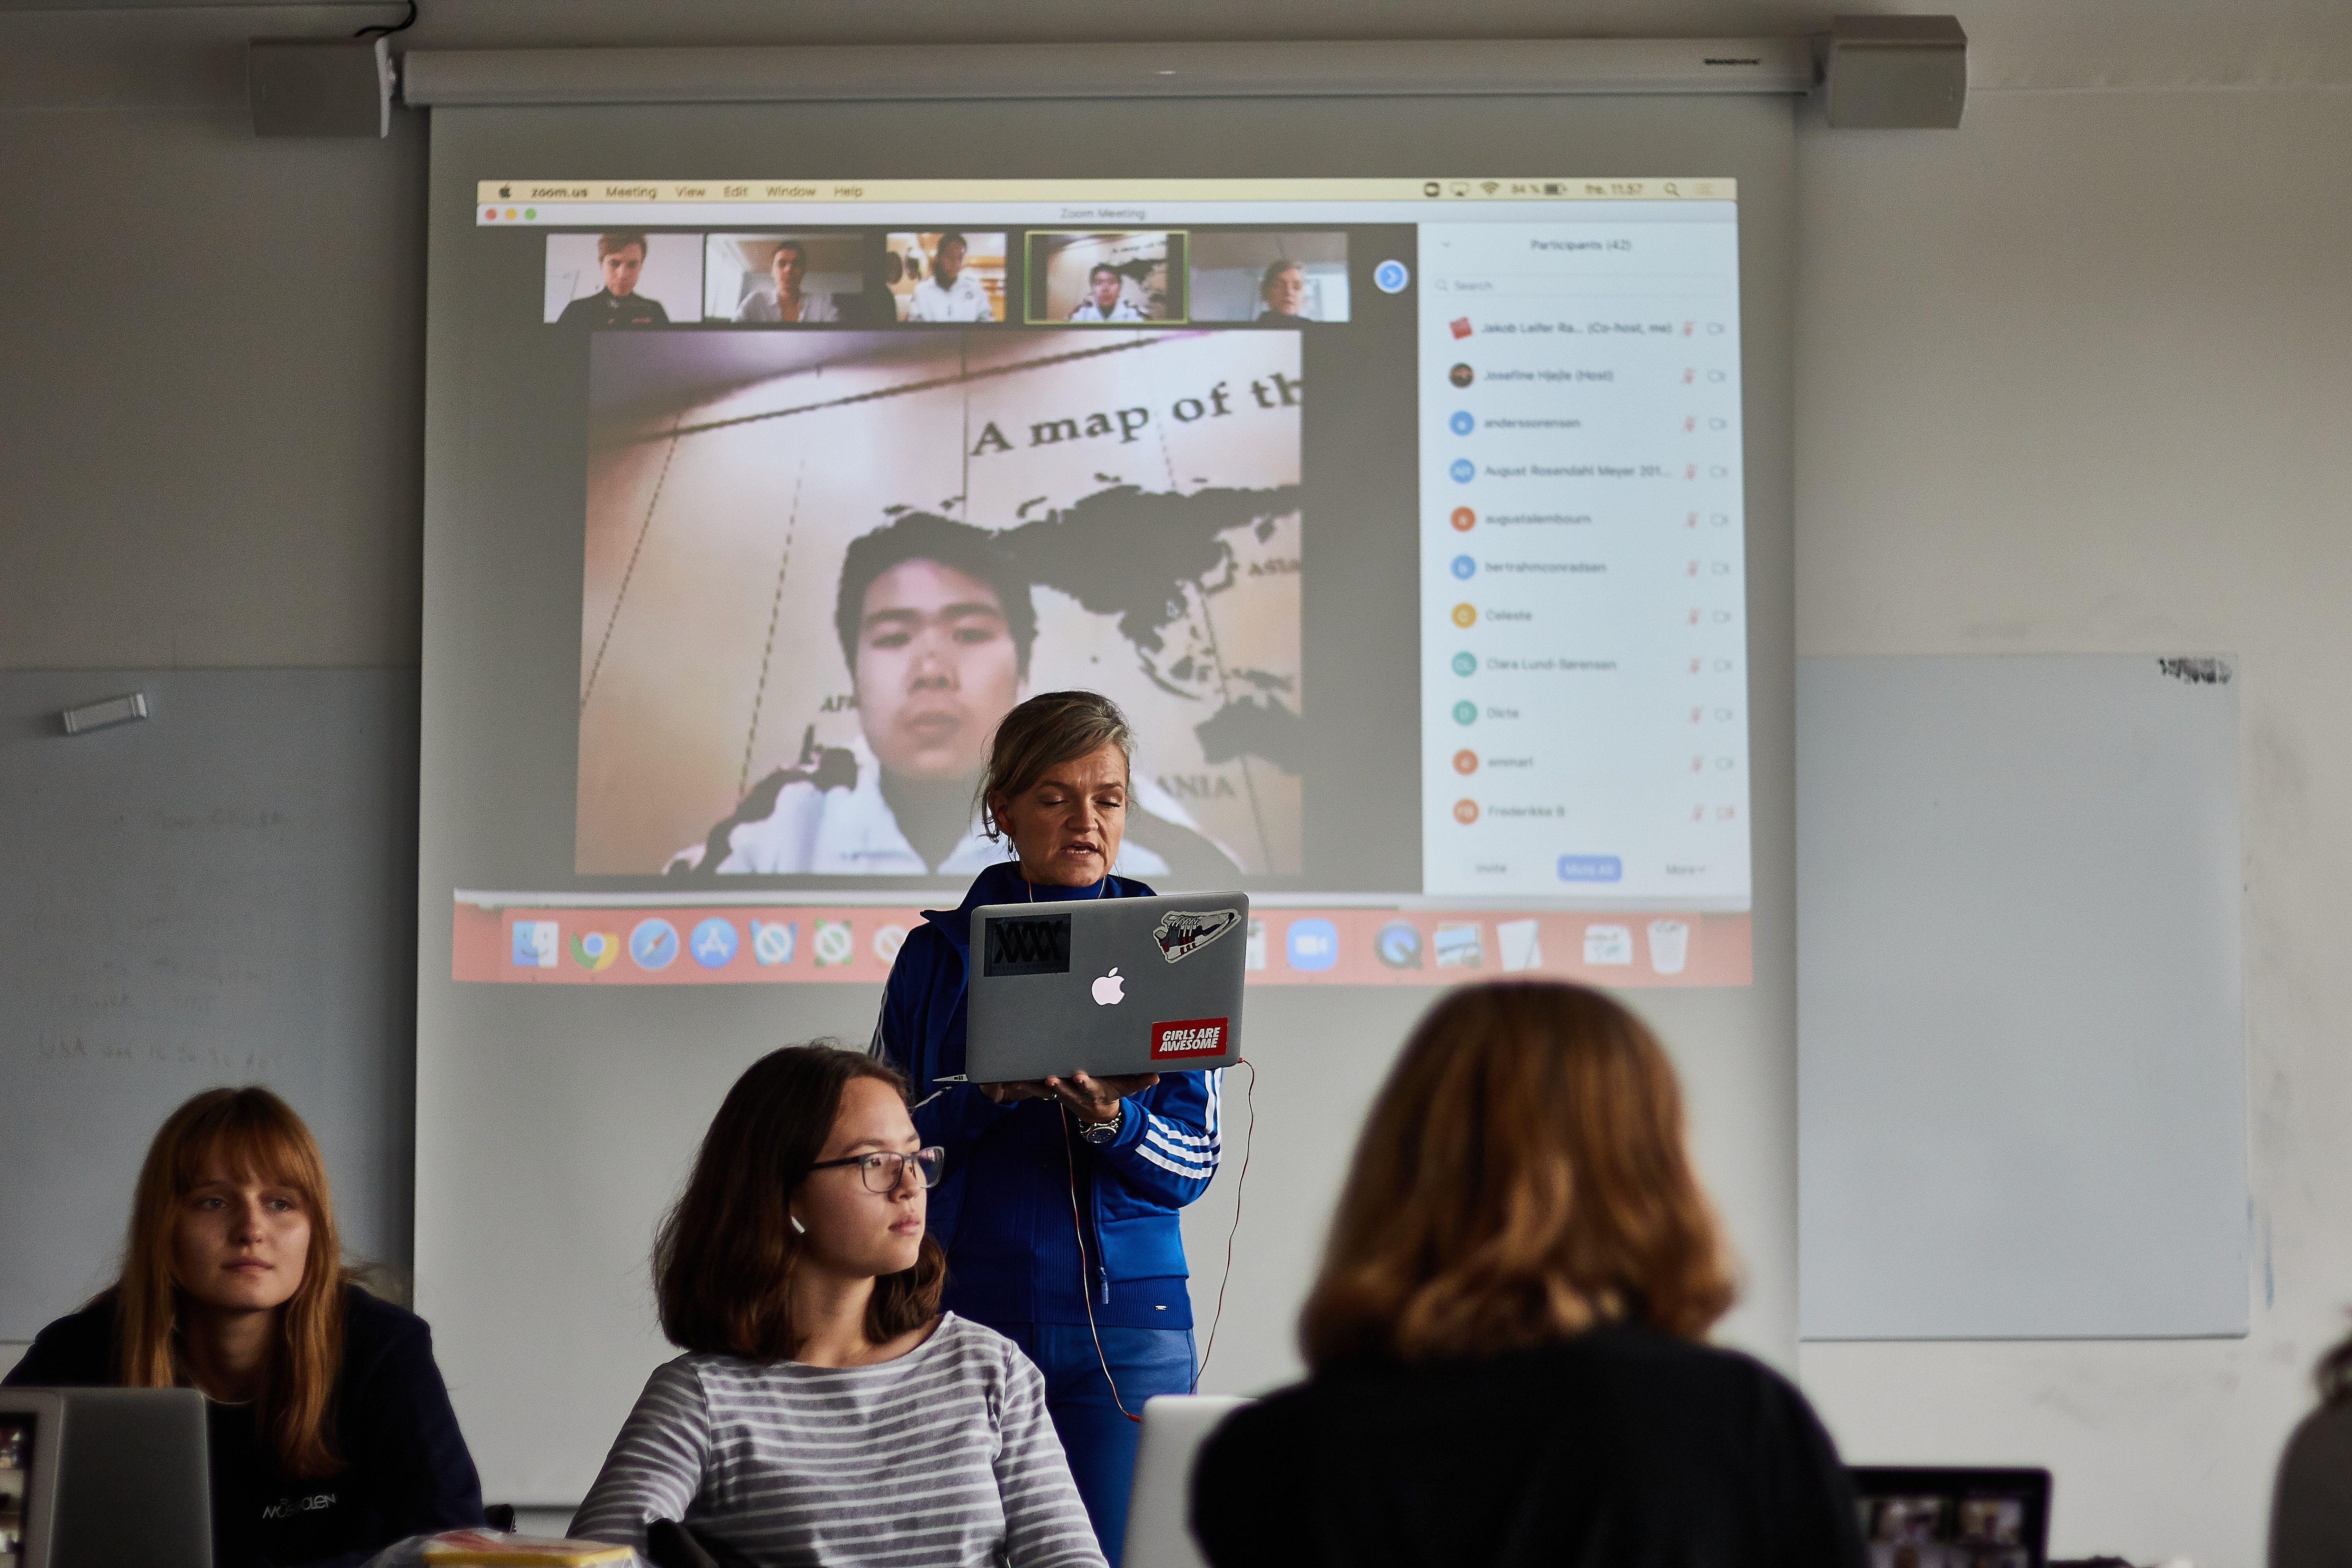 3.g'erne mødes virtuelt med deres partnerskoles elever